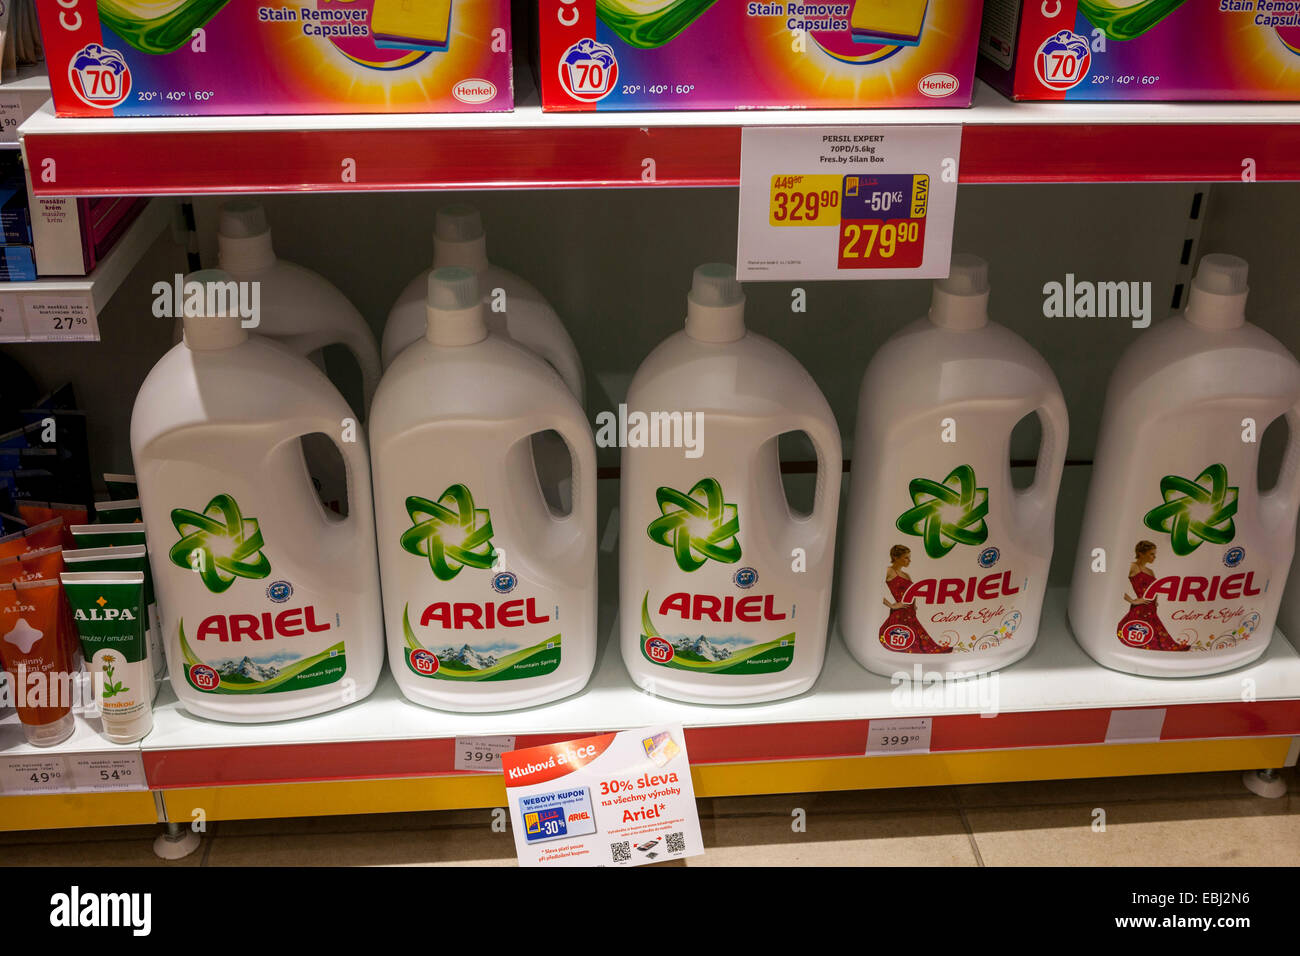 Lavado de polvo Ariel en una estantería de supermercado República Checa Foto de stock